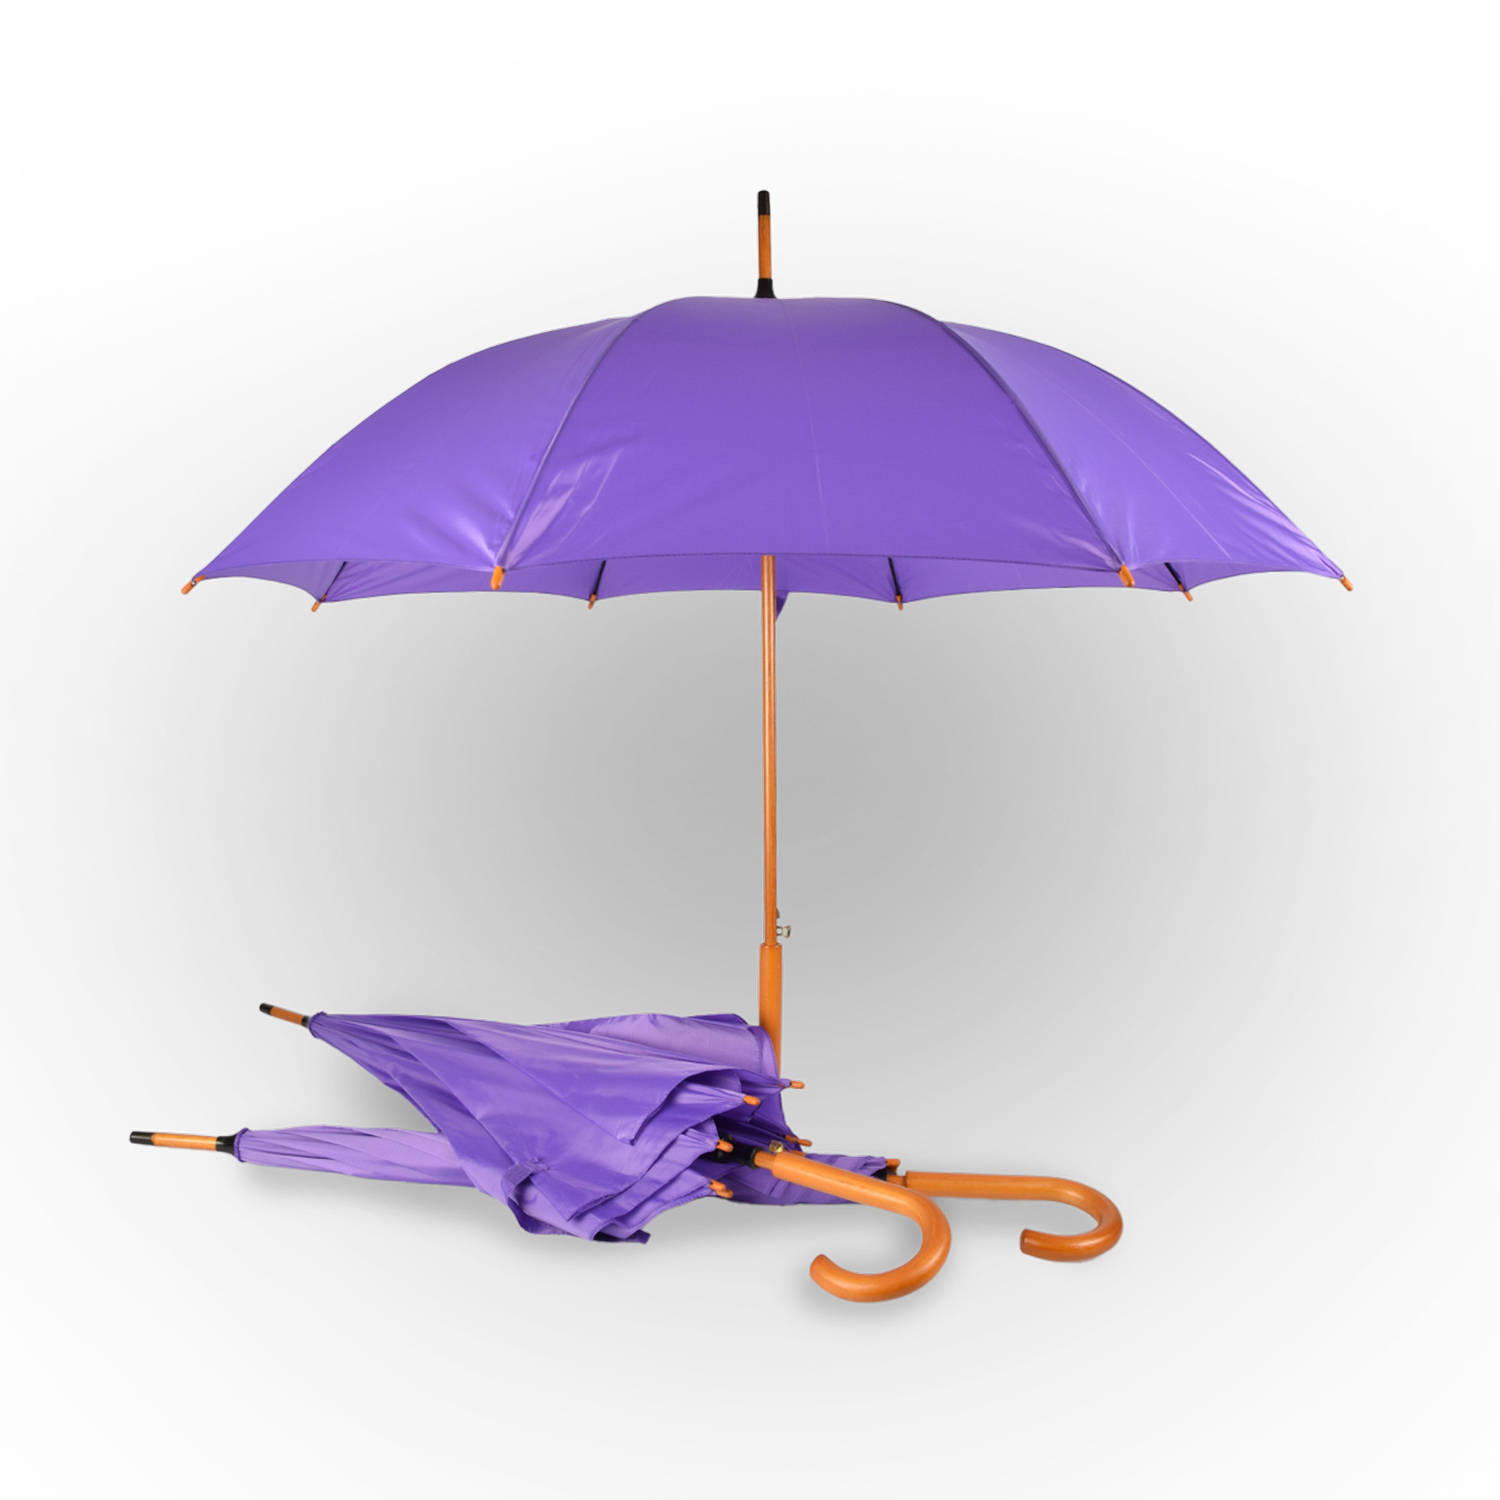 3x Paraplu Automatische paraplu paars Opvouwbare paraplu Houten handvat 89cm*98cm